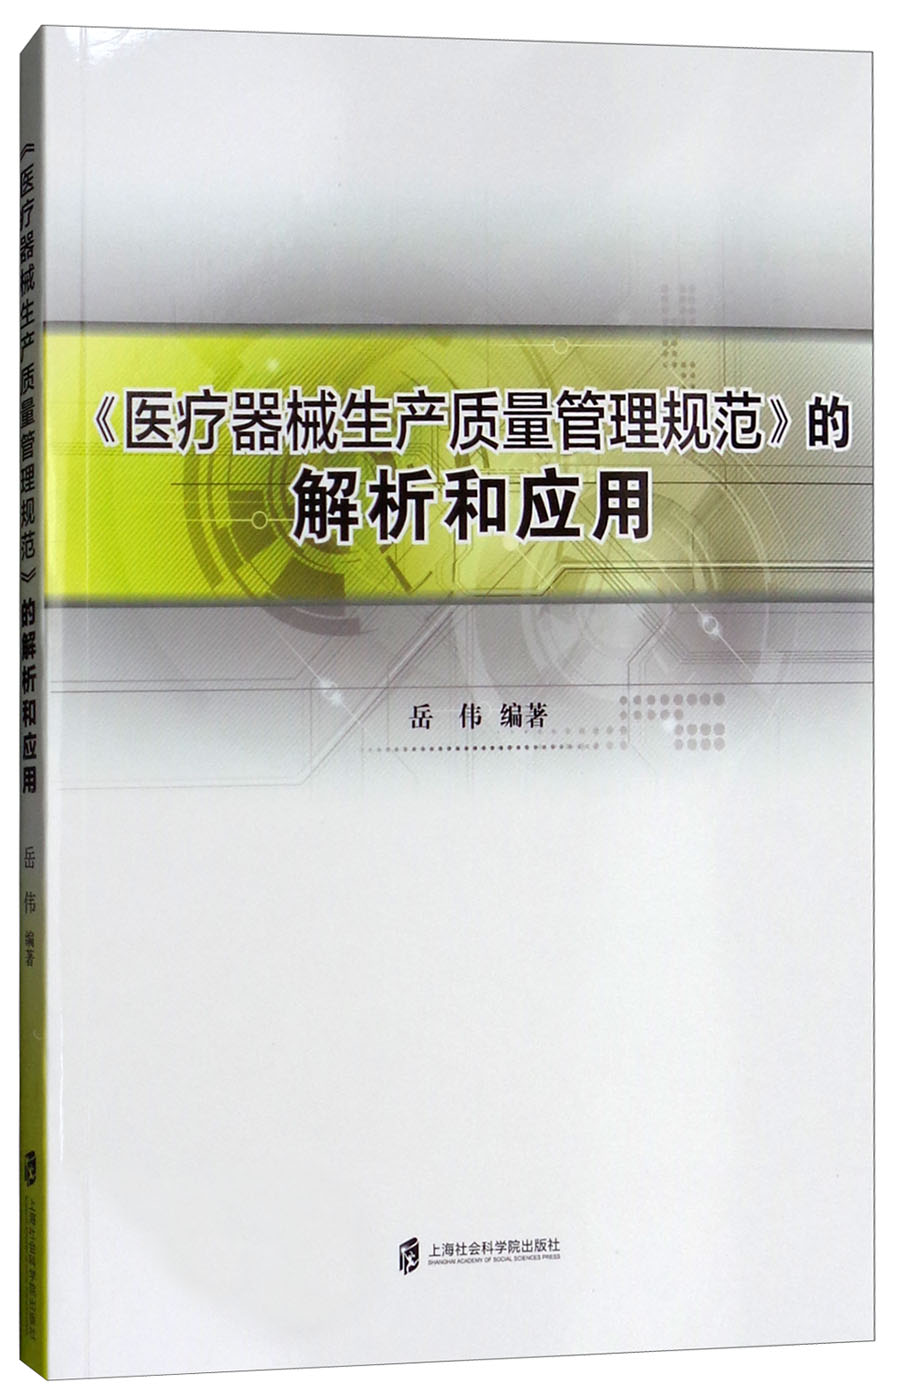 《医疗器械生产质量管理规范》的解析和应用岳伟9787552009309 epub格式下载